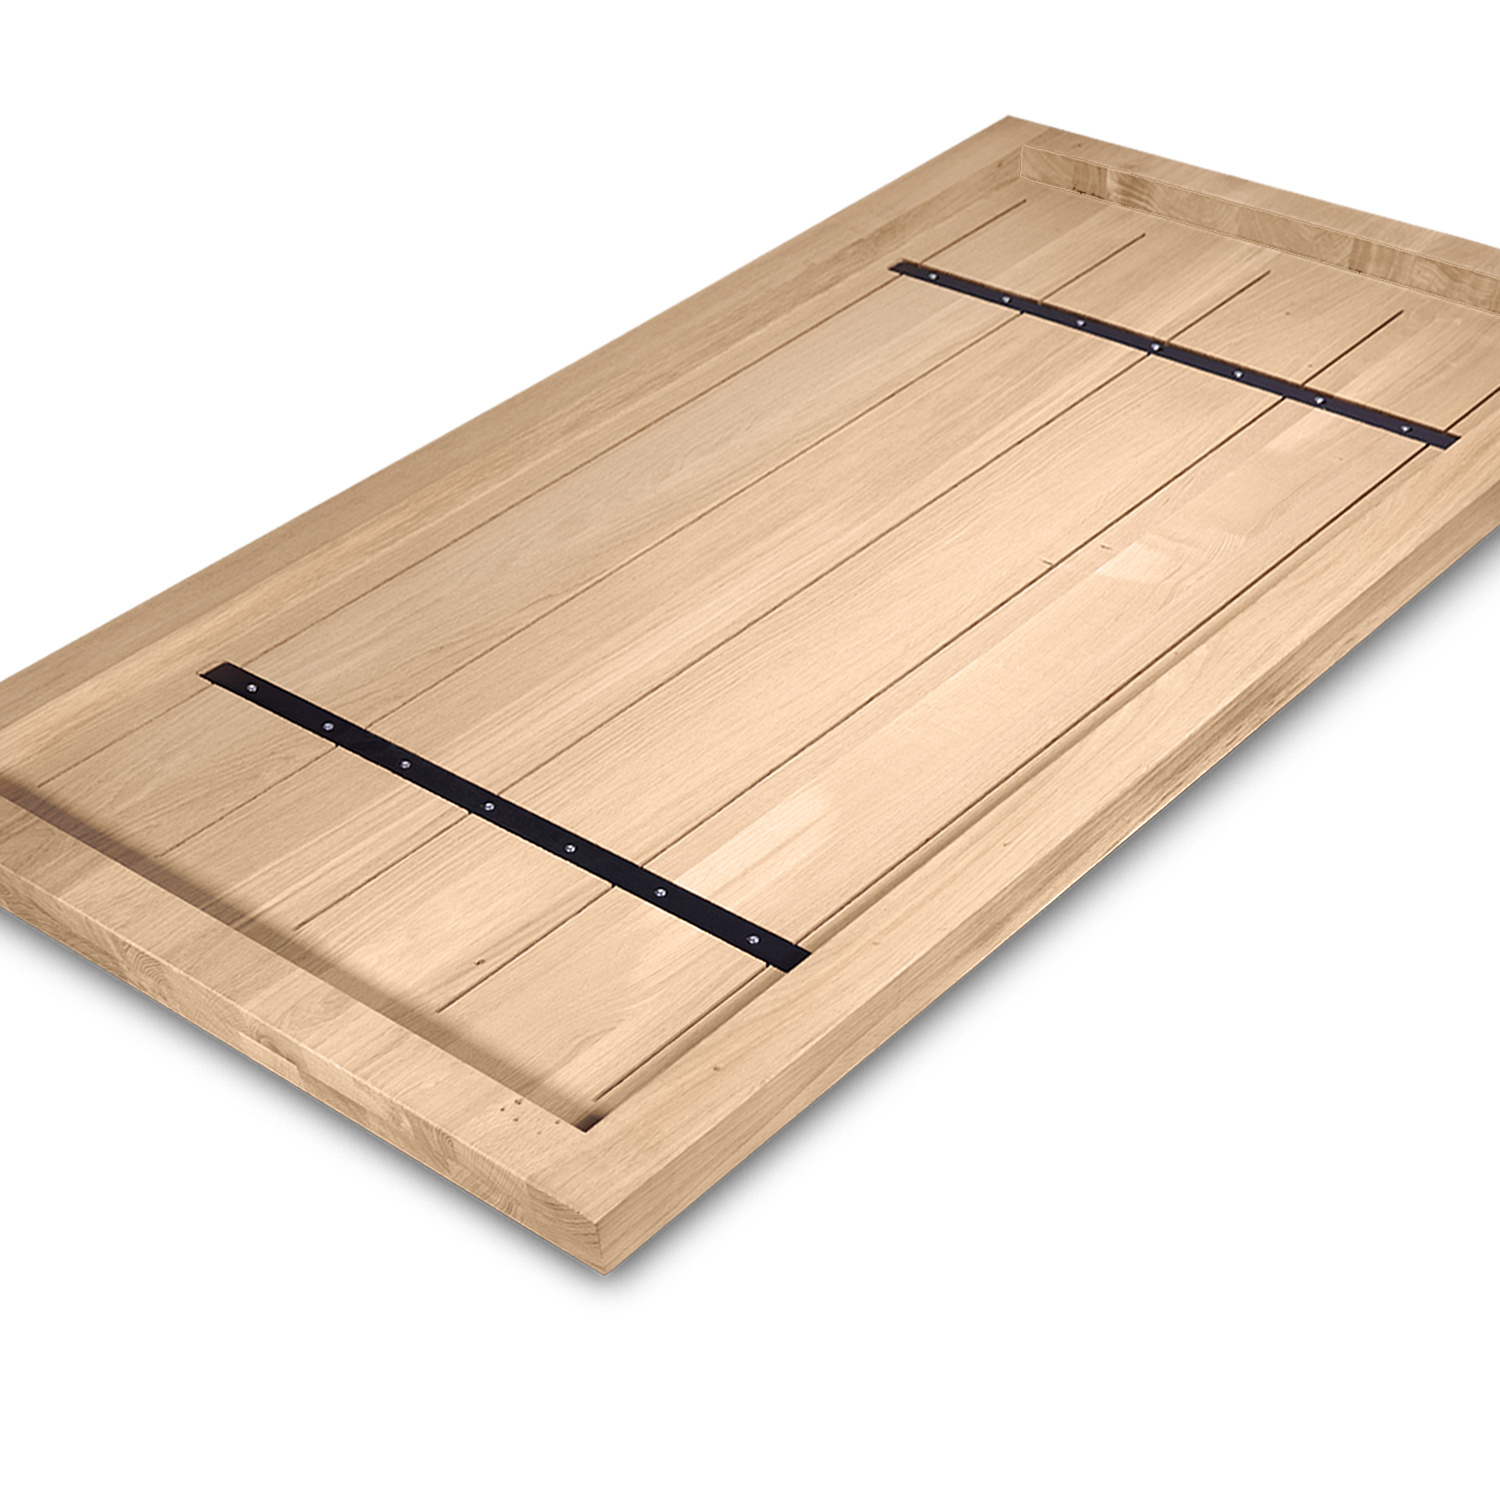  Tischplatte Eiche nach Maß - Aufgedoppelt - 4 cm dick (2-lagig) - Eichenholz rustikal - Eiche Tischplatte massiv - verleimt & künstlich getrocknet (HF 8-12%) - 50-120x50-300 cm